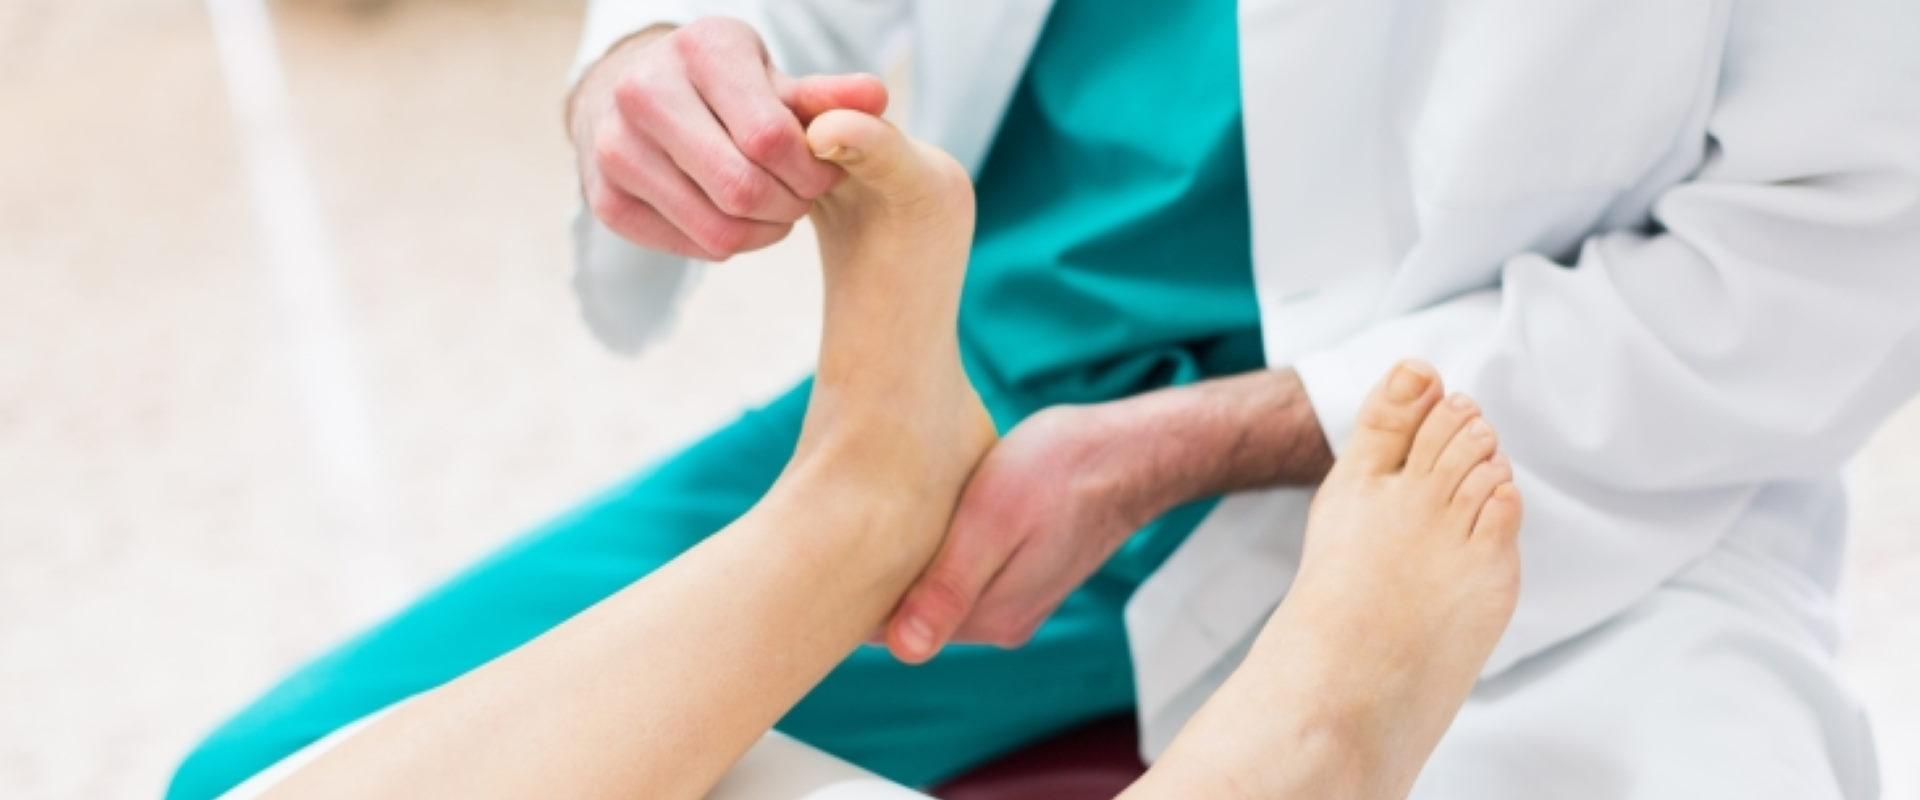 La salute del corpo passa anche dai piedi - Podomedical